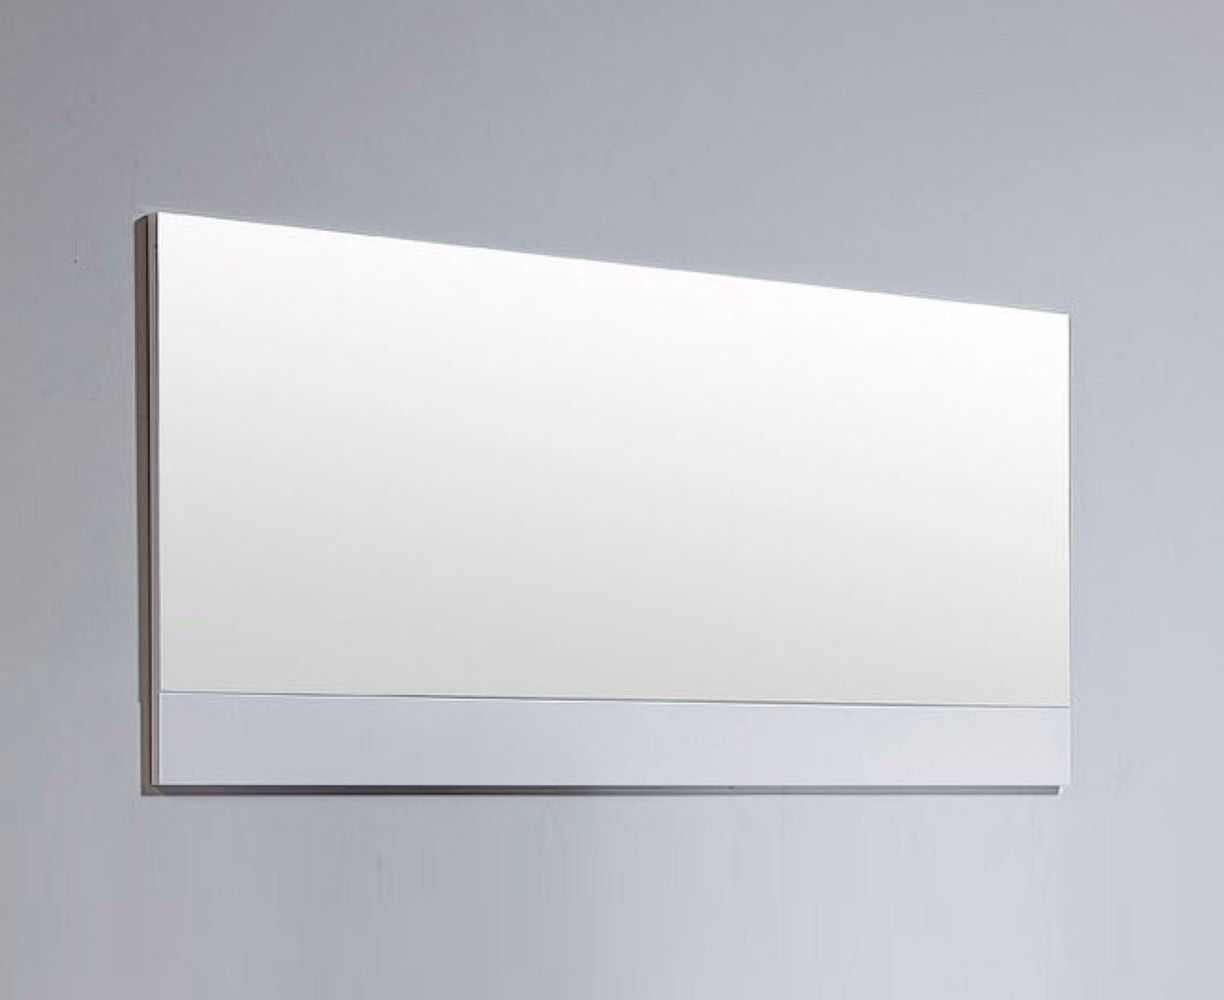 24" White Framed Bathroom Vanity Mirror